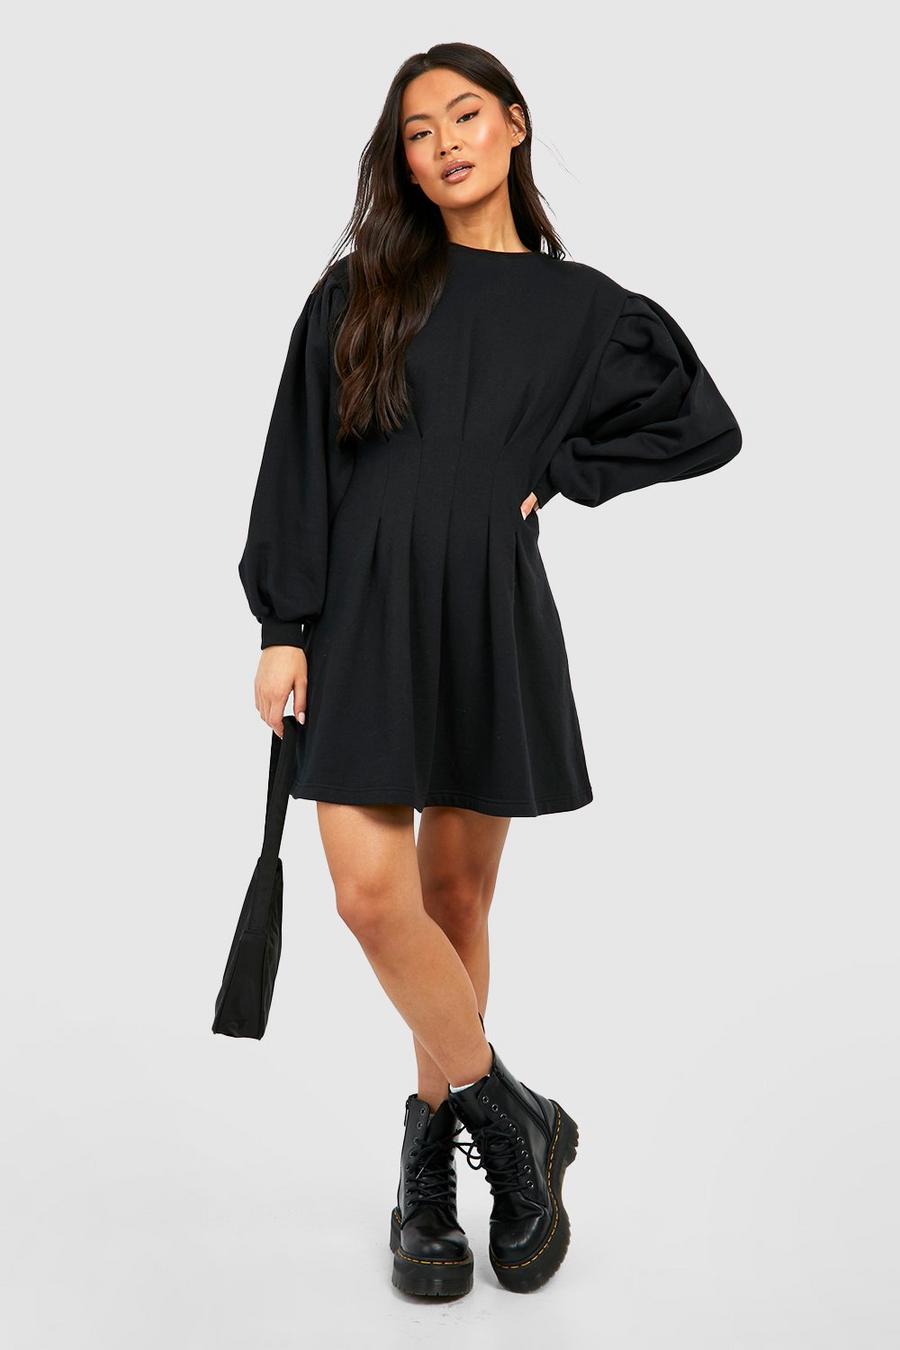 Black schwarz Ruched Waist Skater Sweatshirt Dress